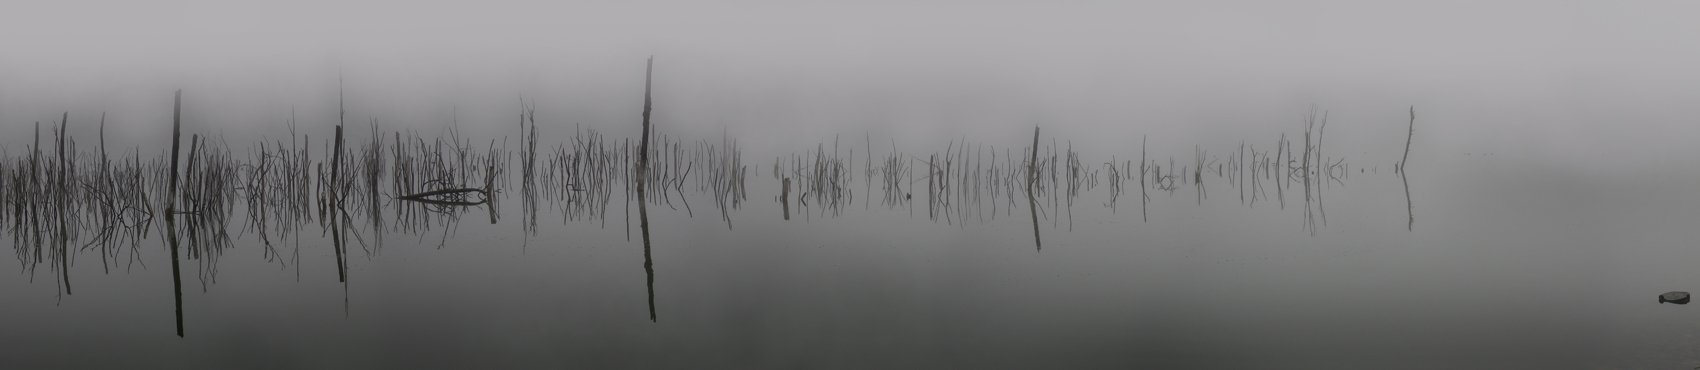 озеро тамбукан, кбр, Zaur Vorokov